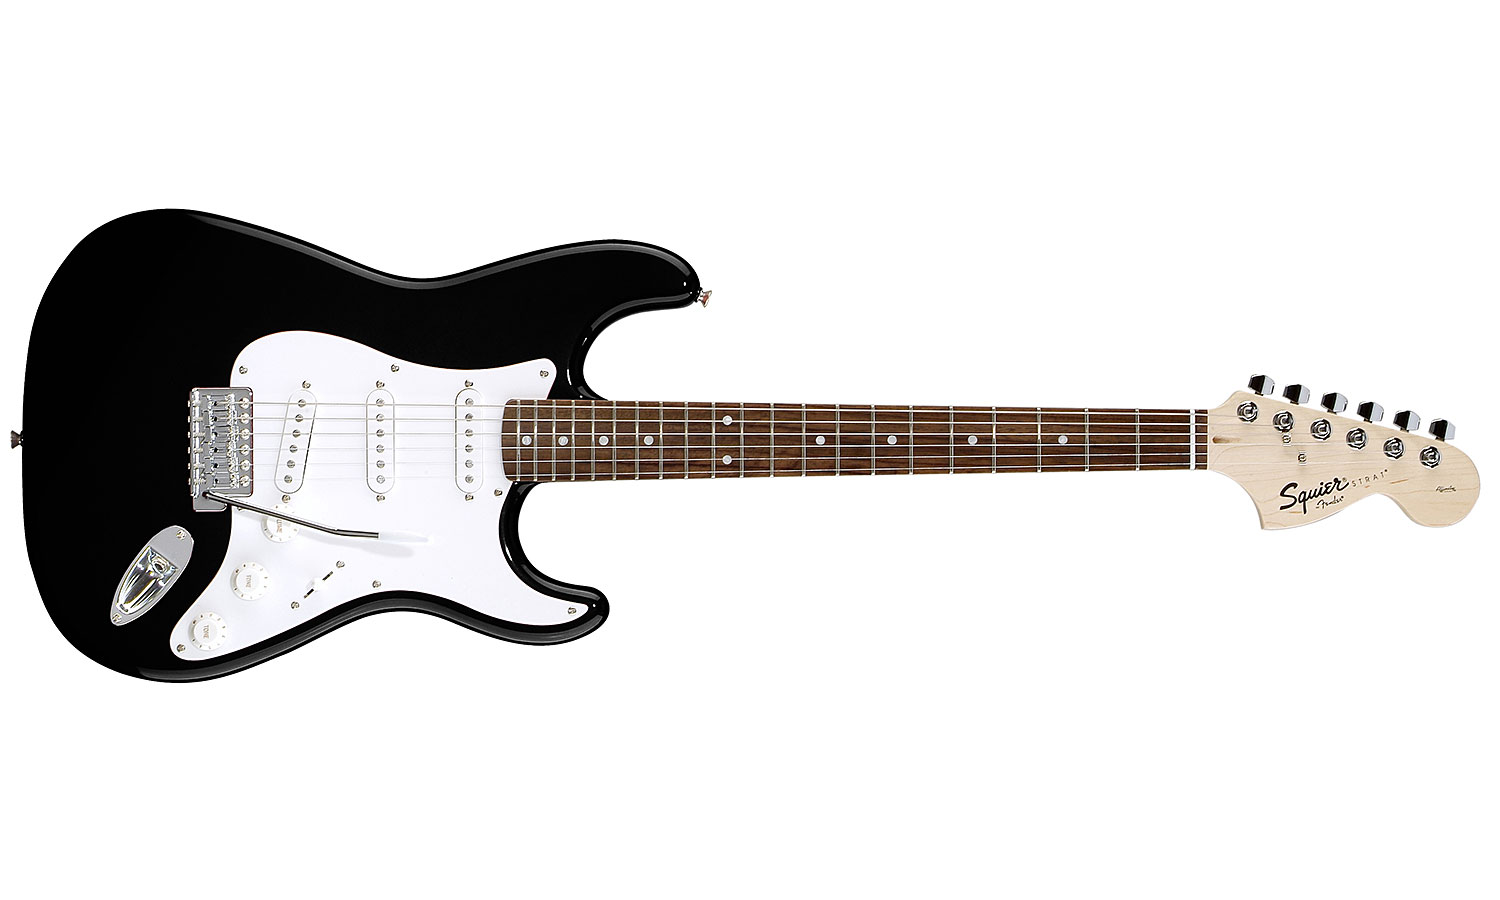 Squier Strat Affinity Series 3s Rw - Black - Guitarra eléctrica con forma de str. - Variation 1